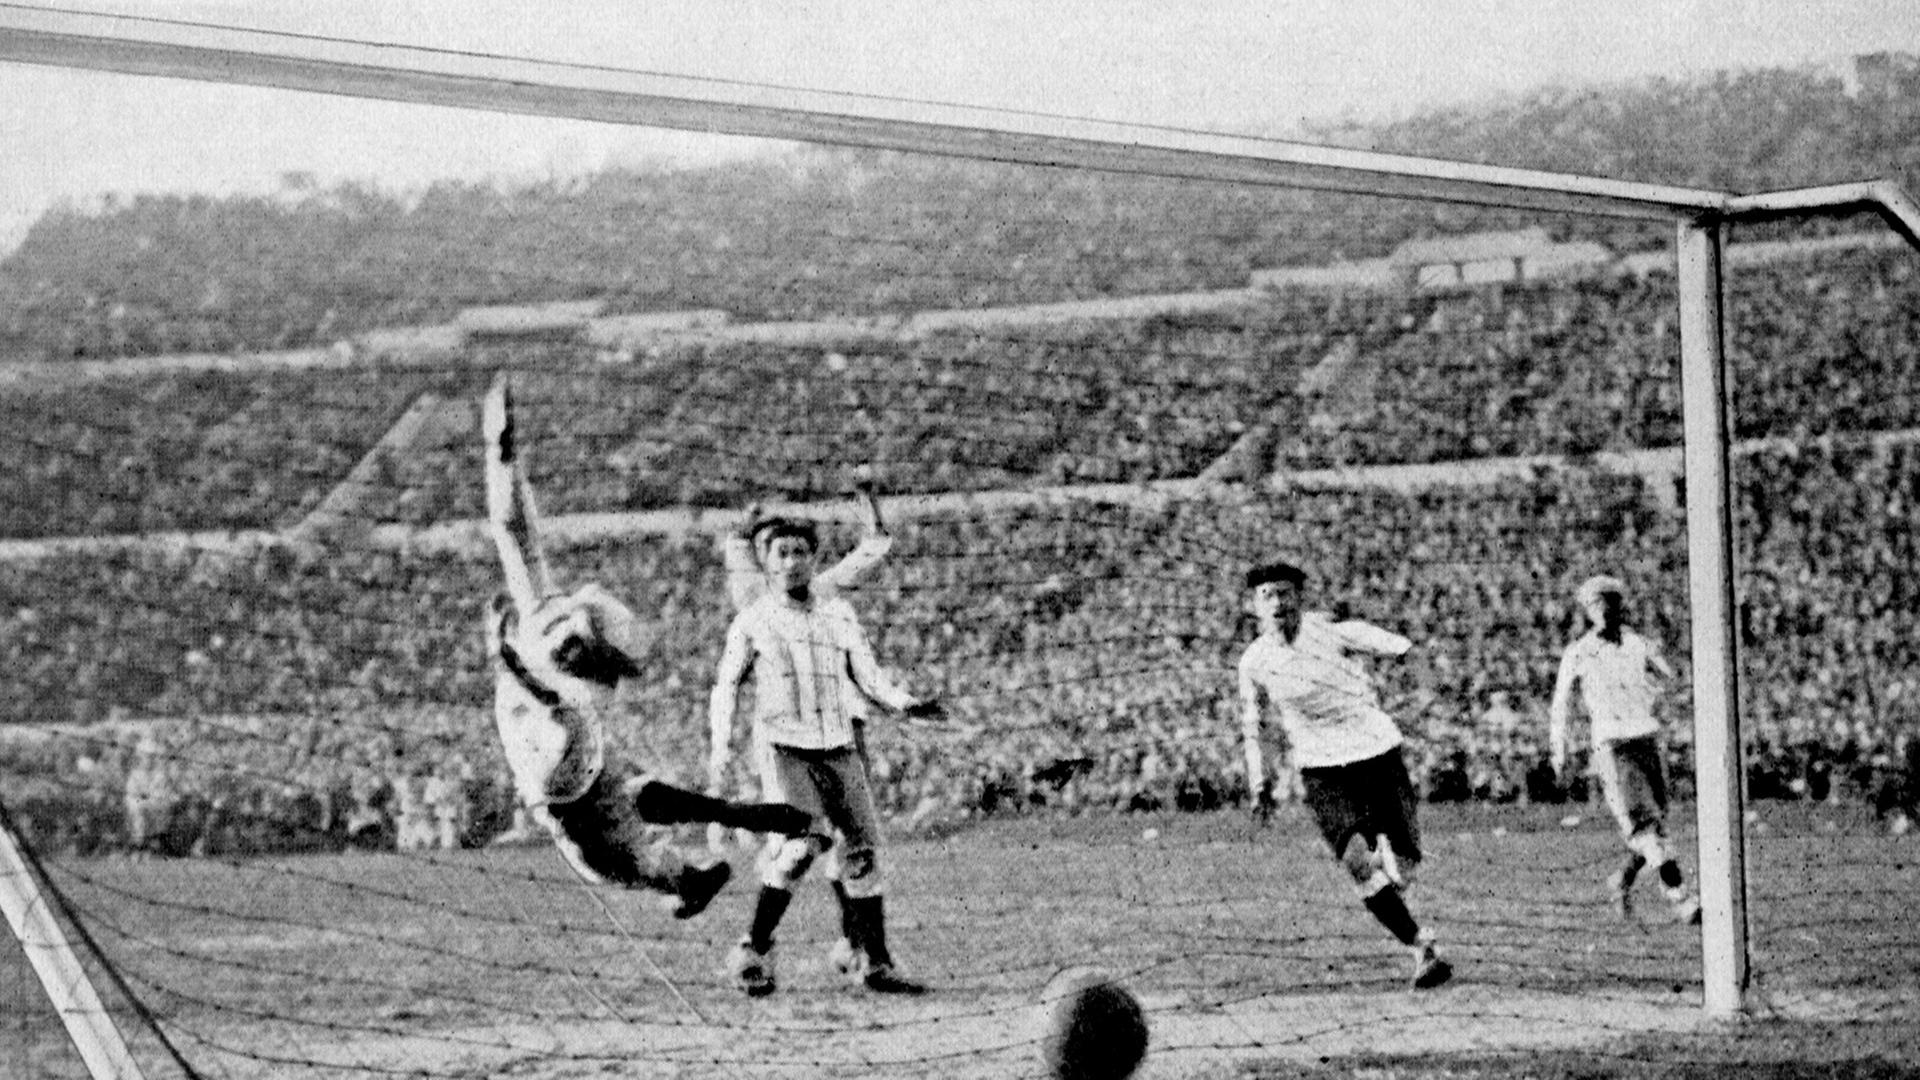 Der uruguayische Fußball-Nationalspieler Hector Castro (2. v. r.) erzielt das vierte Tor für seine Mannschaft während des Endspiels Uruguay-Argentinien (4:2) bei der Fußball-Weltmeisterschaft am 30.07.1930 in Montevideo. Argentiniens Torhüter Juan Botasso (l) springt vergeblich durch die Luft.